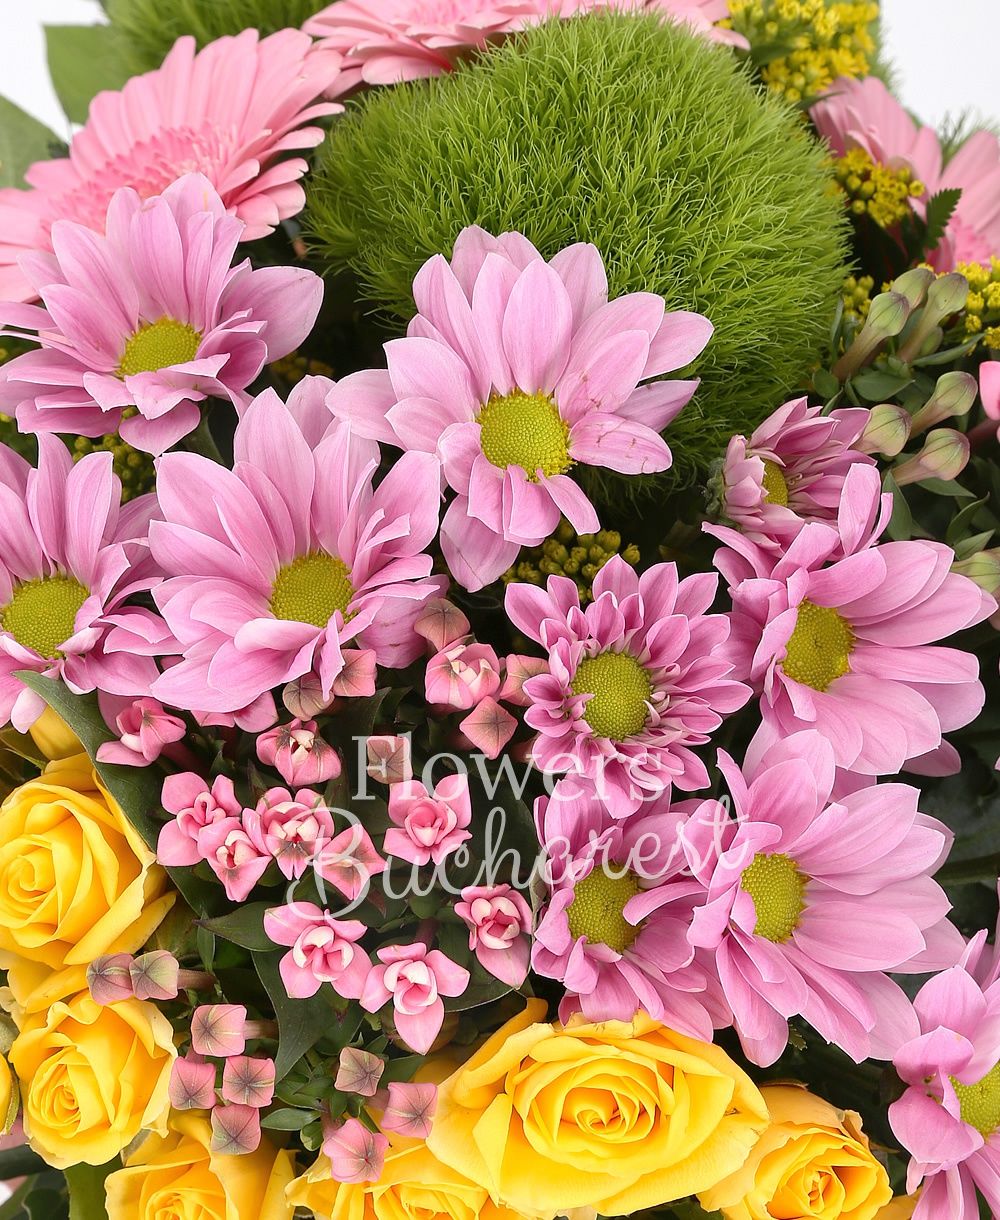 3 green carnations, 3 yellow miniroses, 2 pink chrysanthemums, 2 pink bouvardia, 3 pink gerberas, 3 solidago, greenery